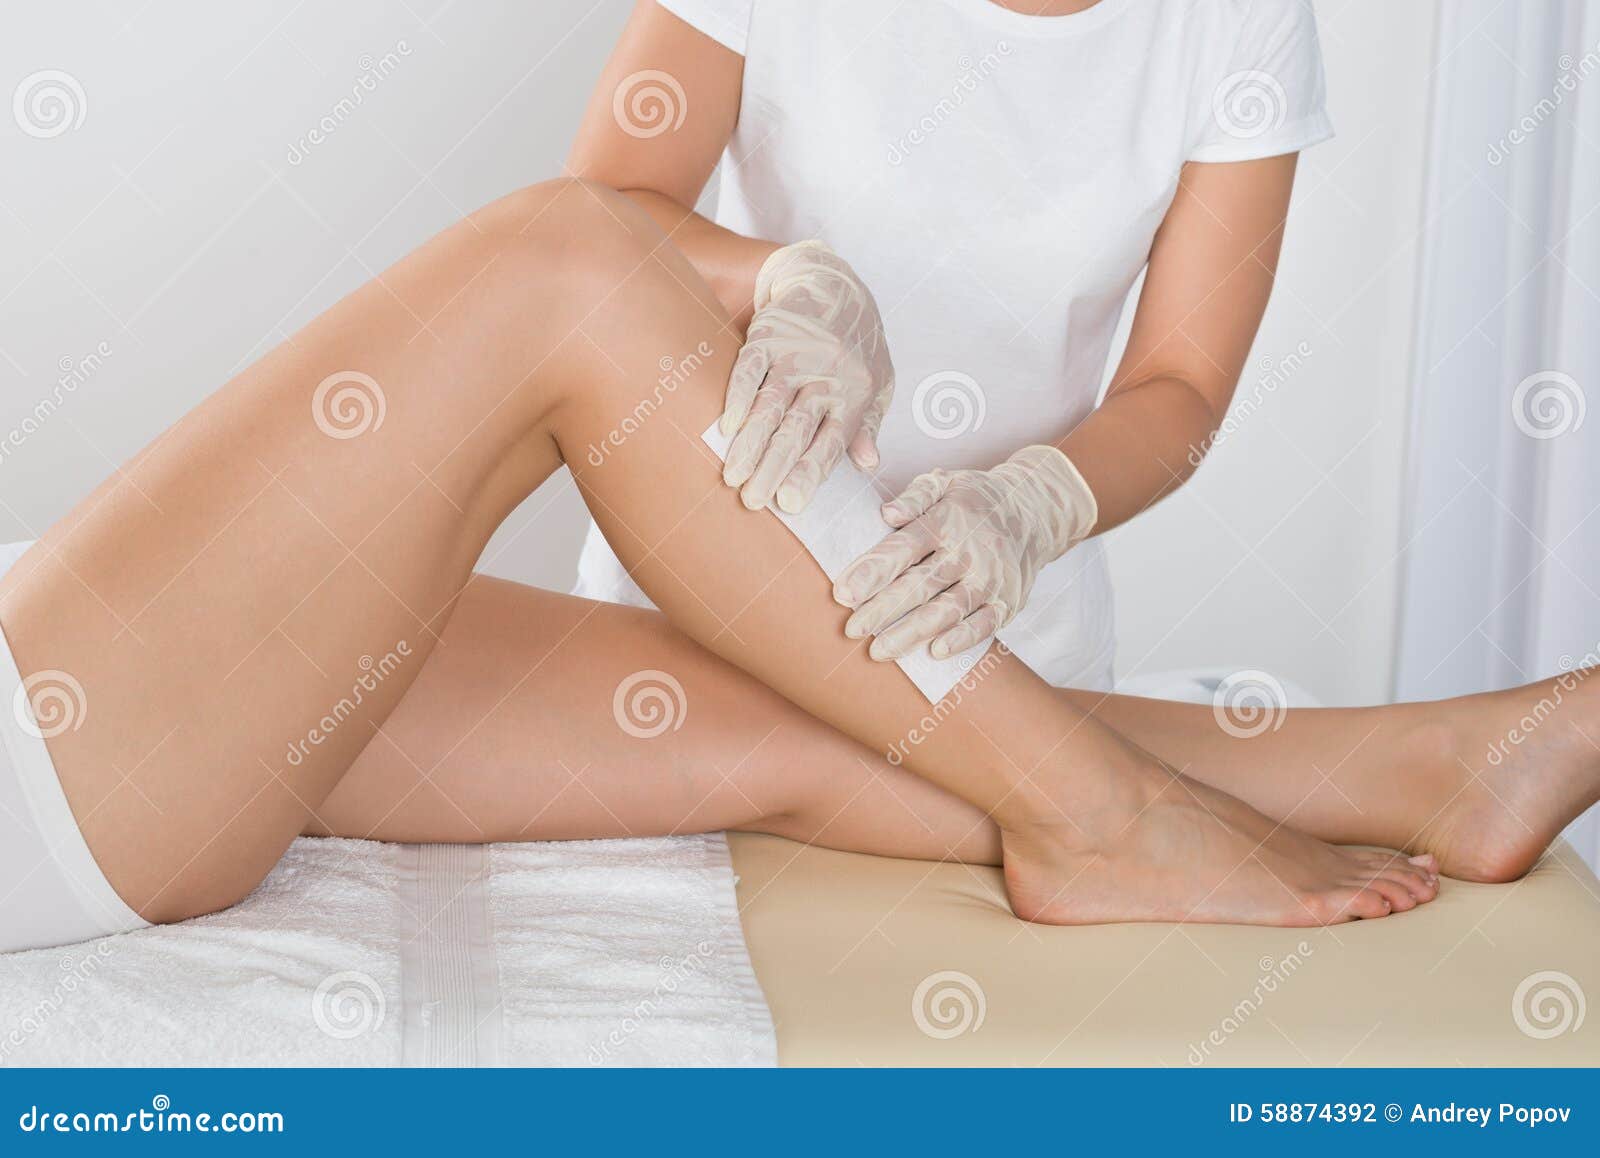 beautician waxing leg of woman